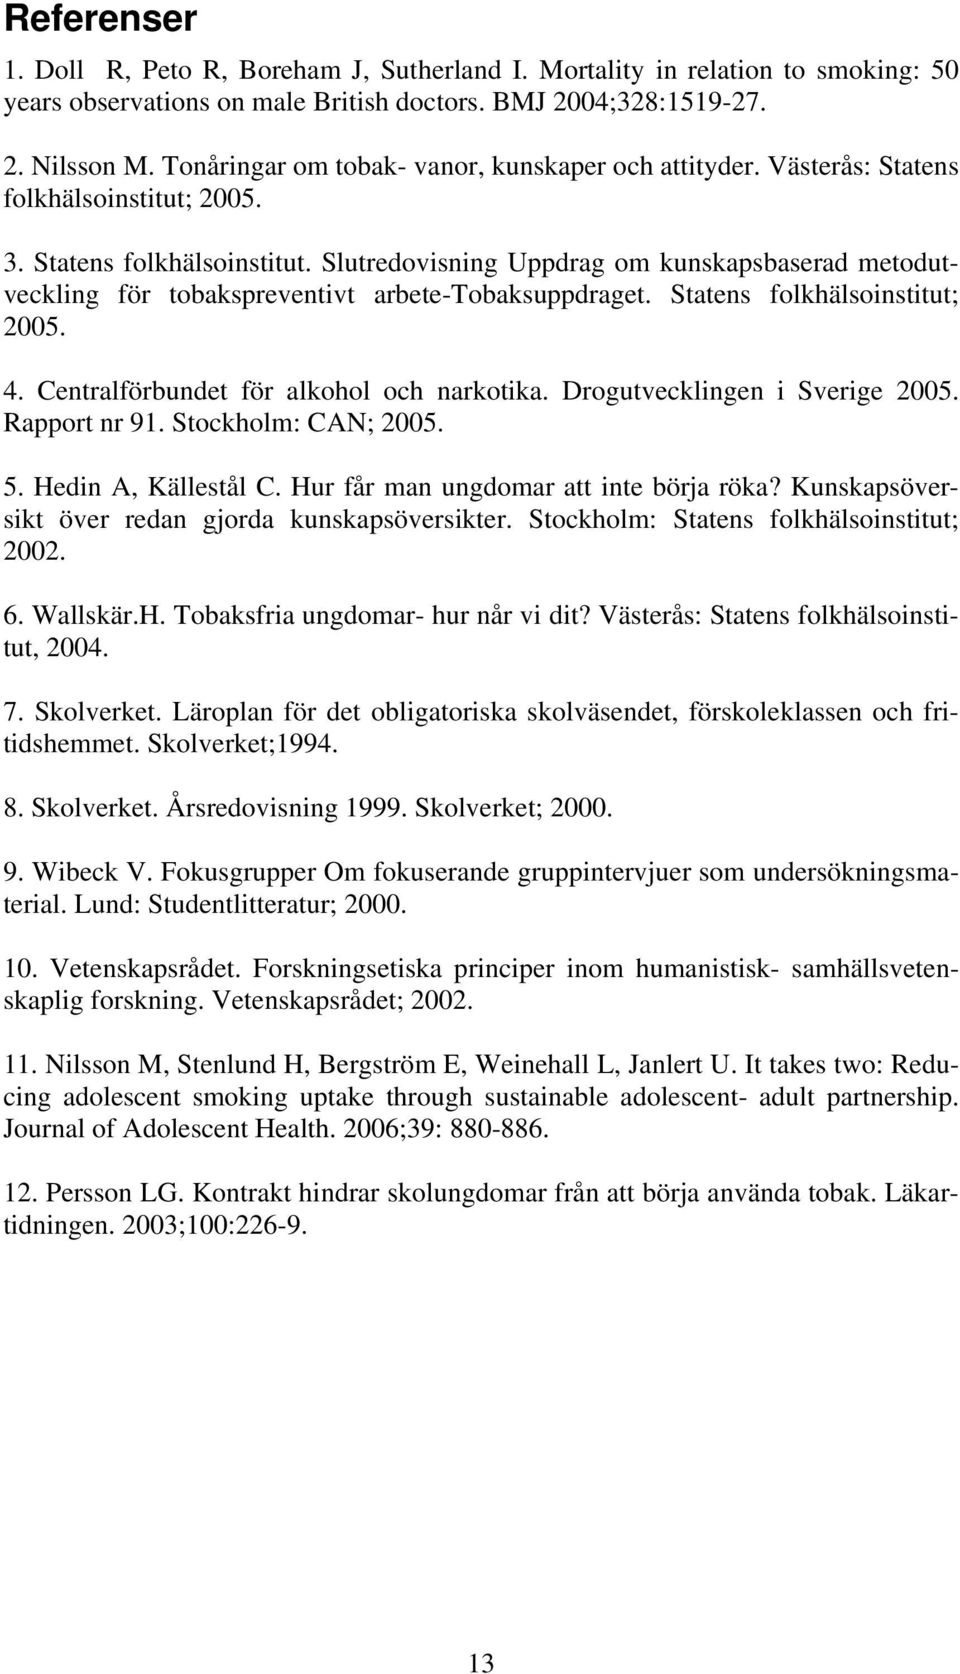 Statens folkhälsoinstitut; 2005. 4. Centralförbundet för alkohol och narkotika. Drogutvecklingen i Sverige 2005. Rapport nr 91. Stockholm: CAN; 2005. 5. Hedin A, Källestål C.